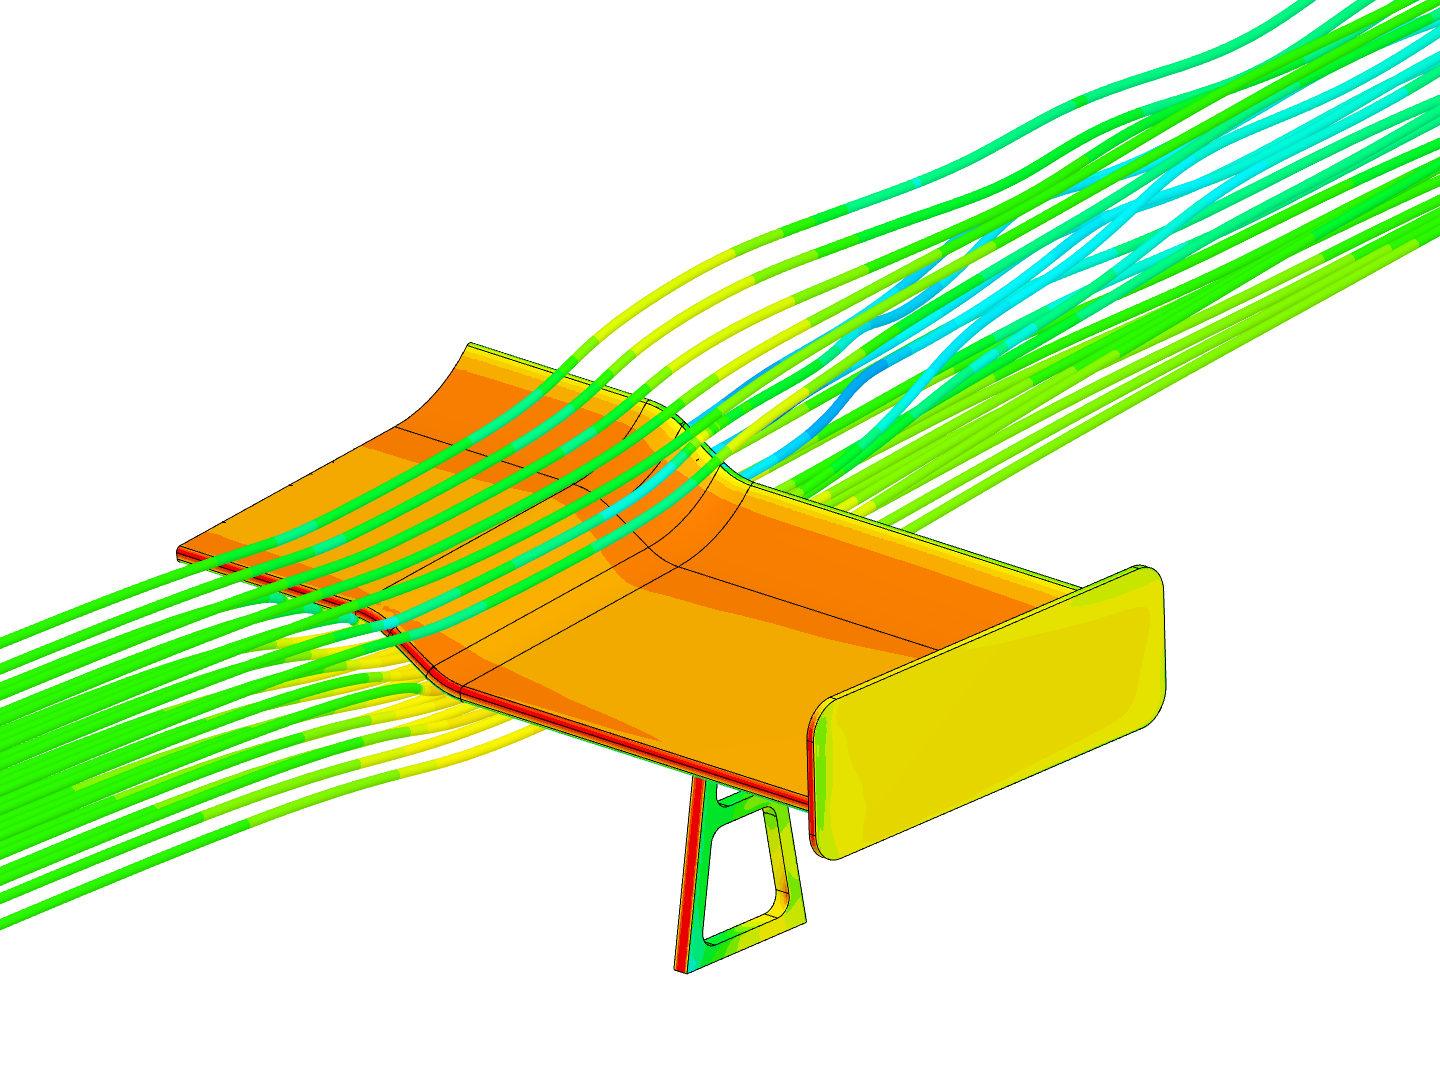 Coursera GT Car Spoiler 1  - Airflow Simulation by Jousefm - Copy - Copy image